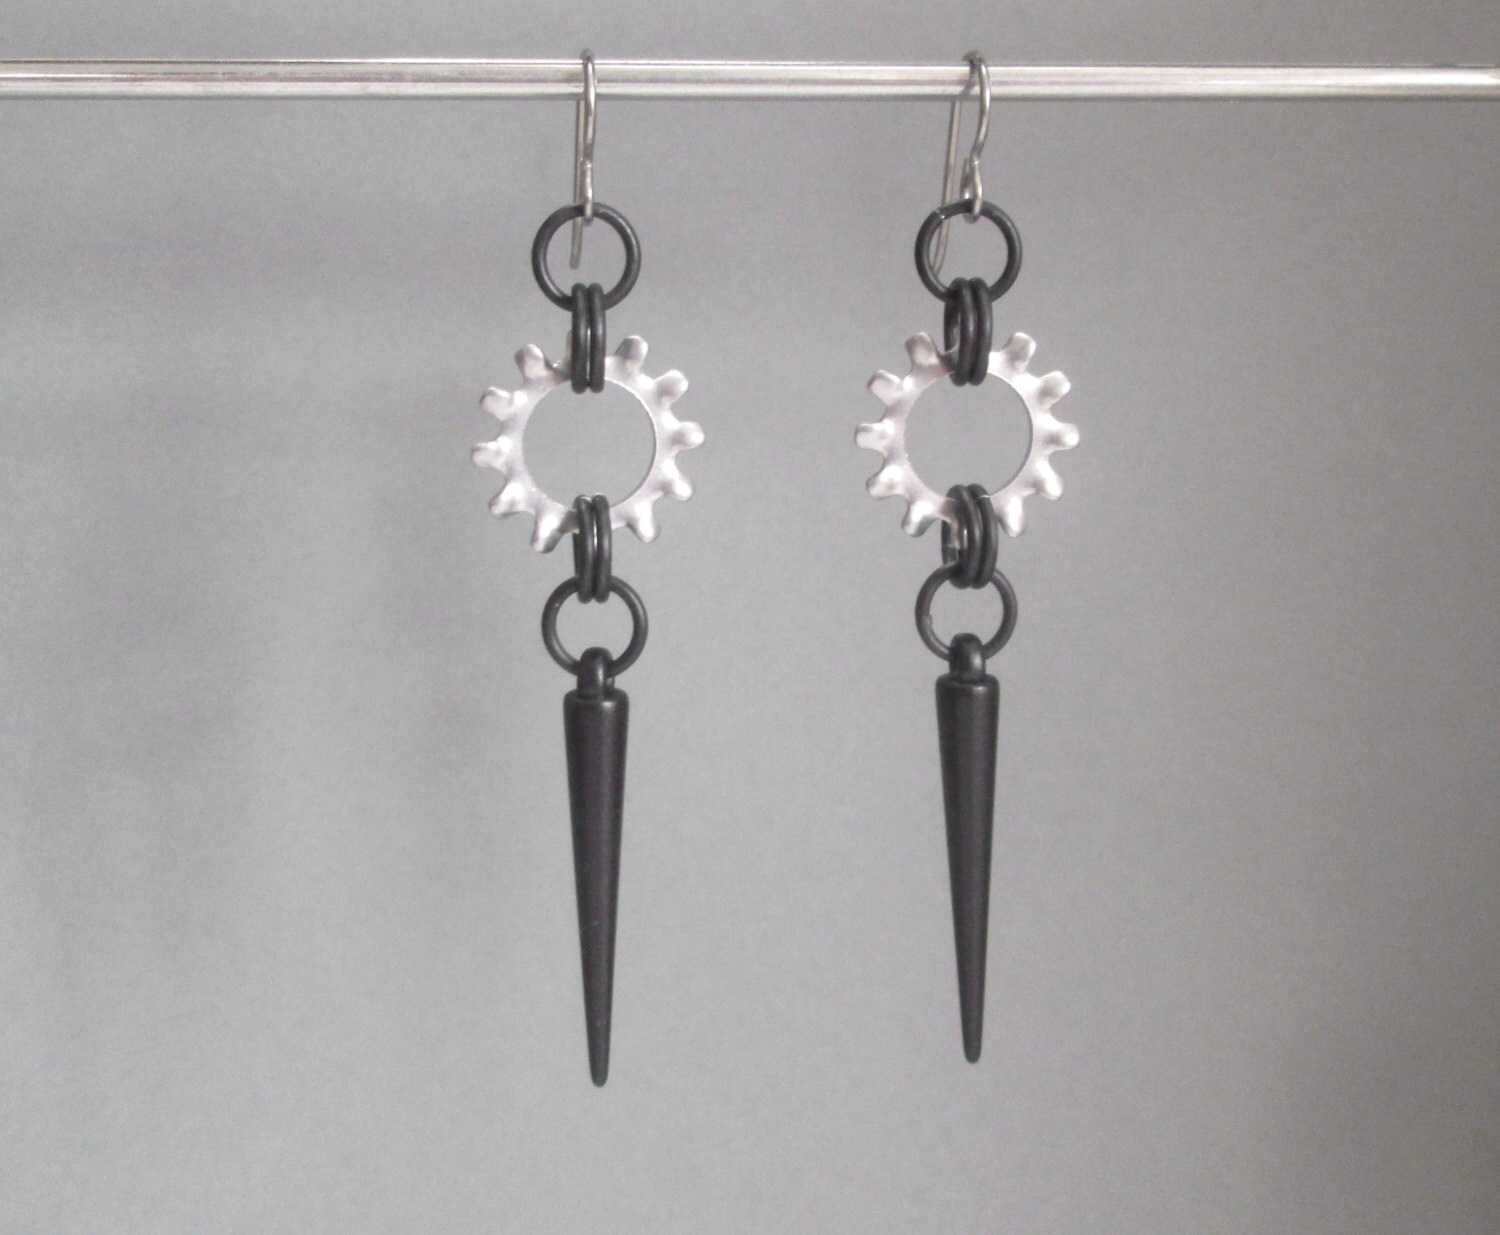 Long Spike Earrings Industrial Earrings Hardware Jewelry | Etsy